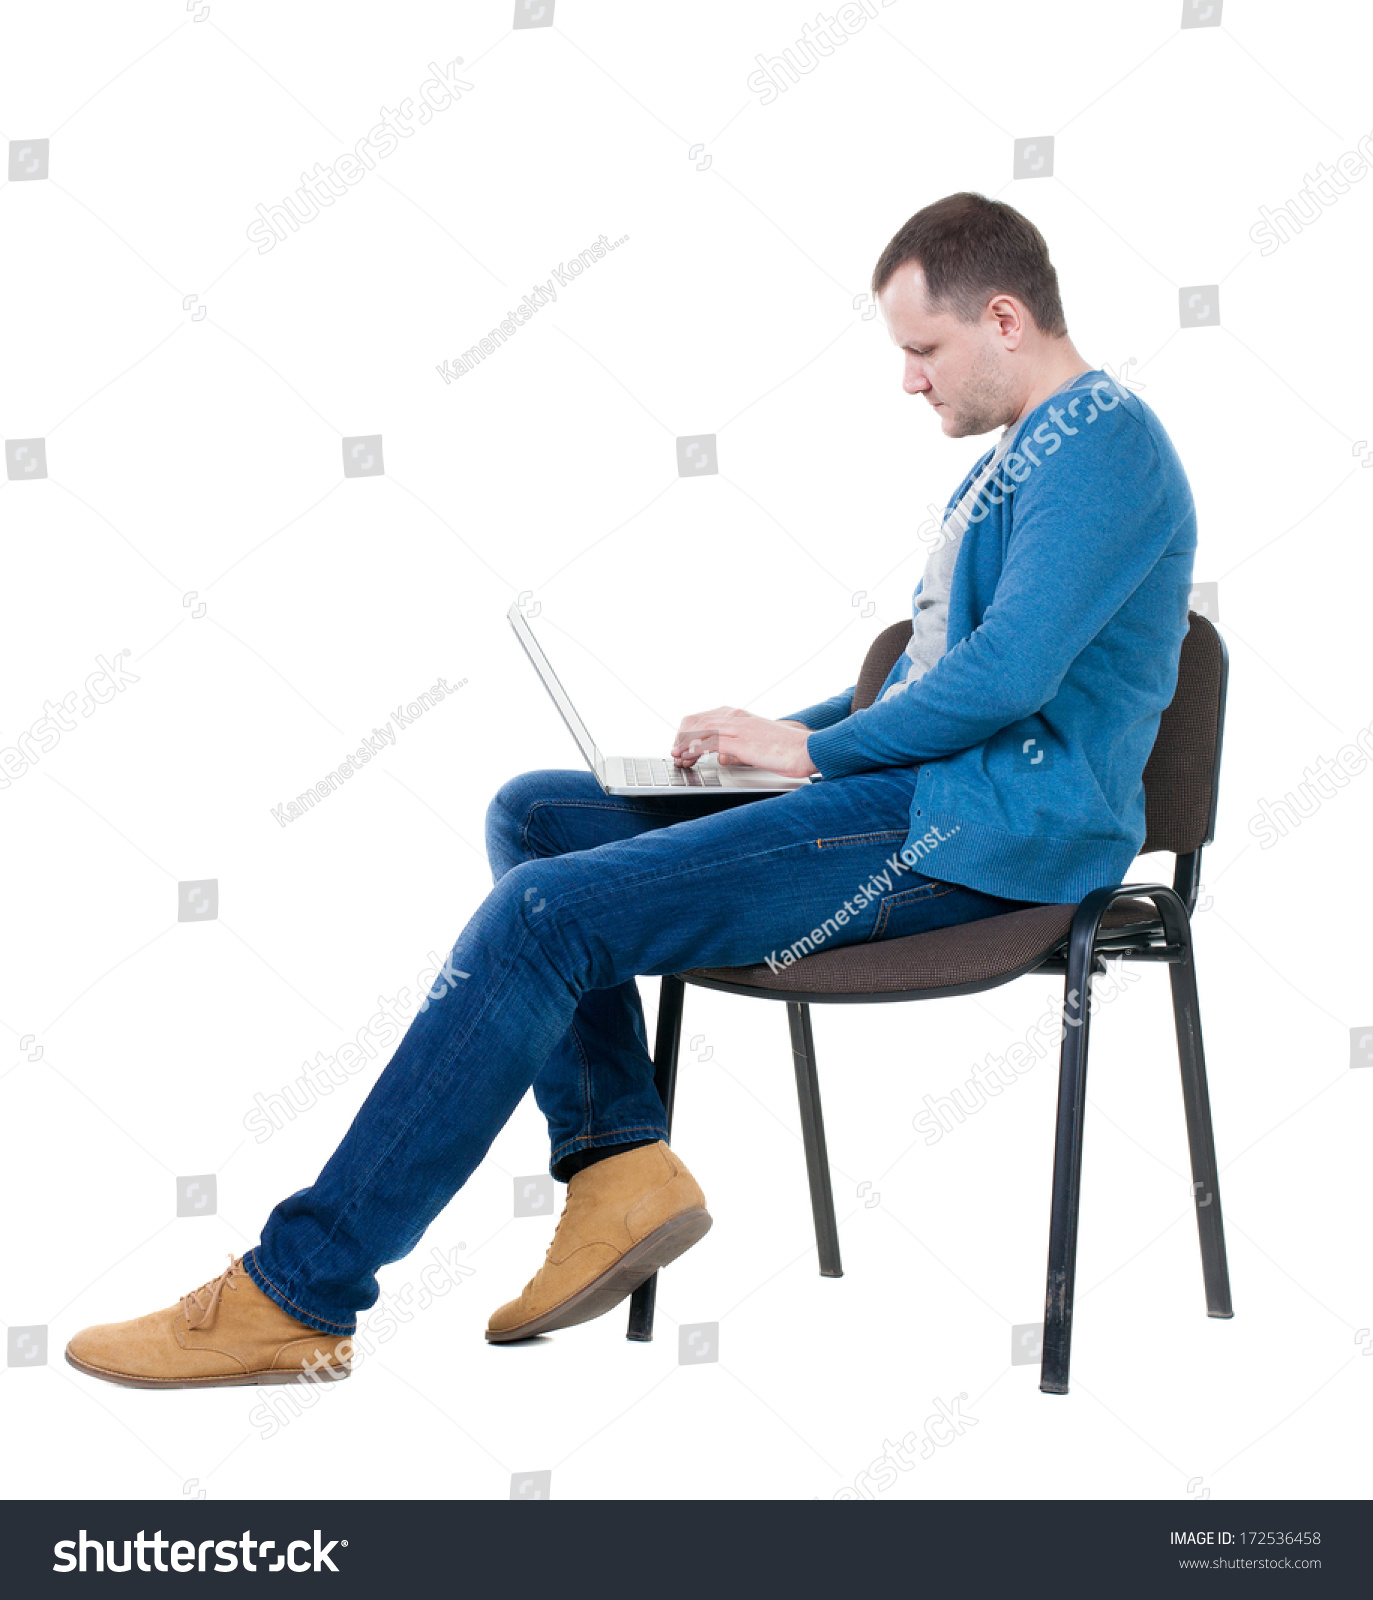 Сидя постою. Мужчина сидит. Человек на стуле. Человек сидит на стуле. Человек сидит с боку.